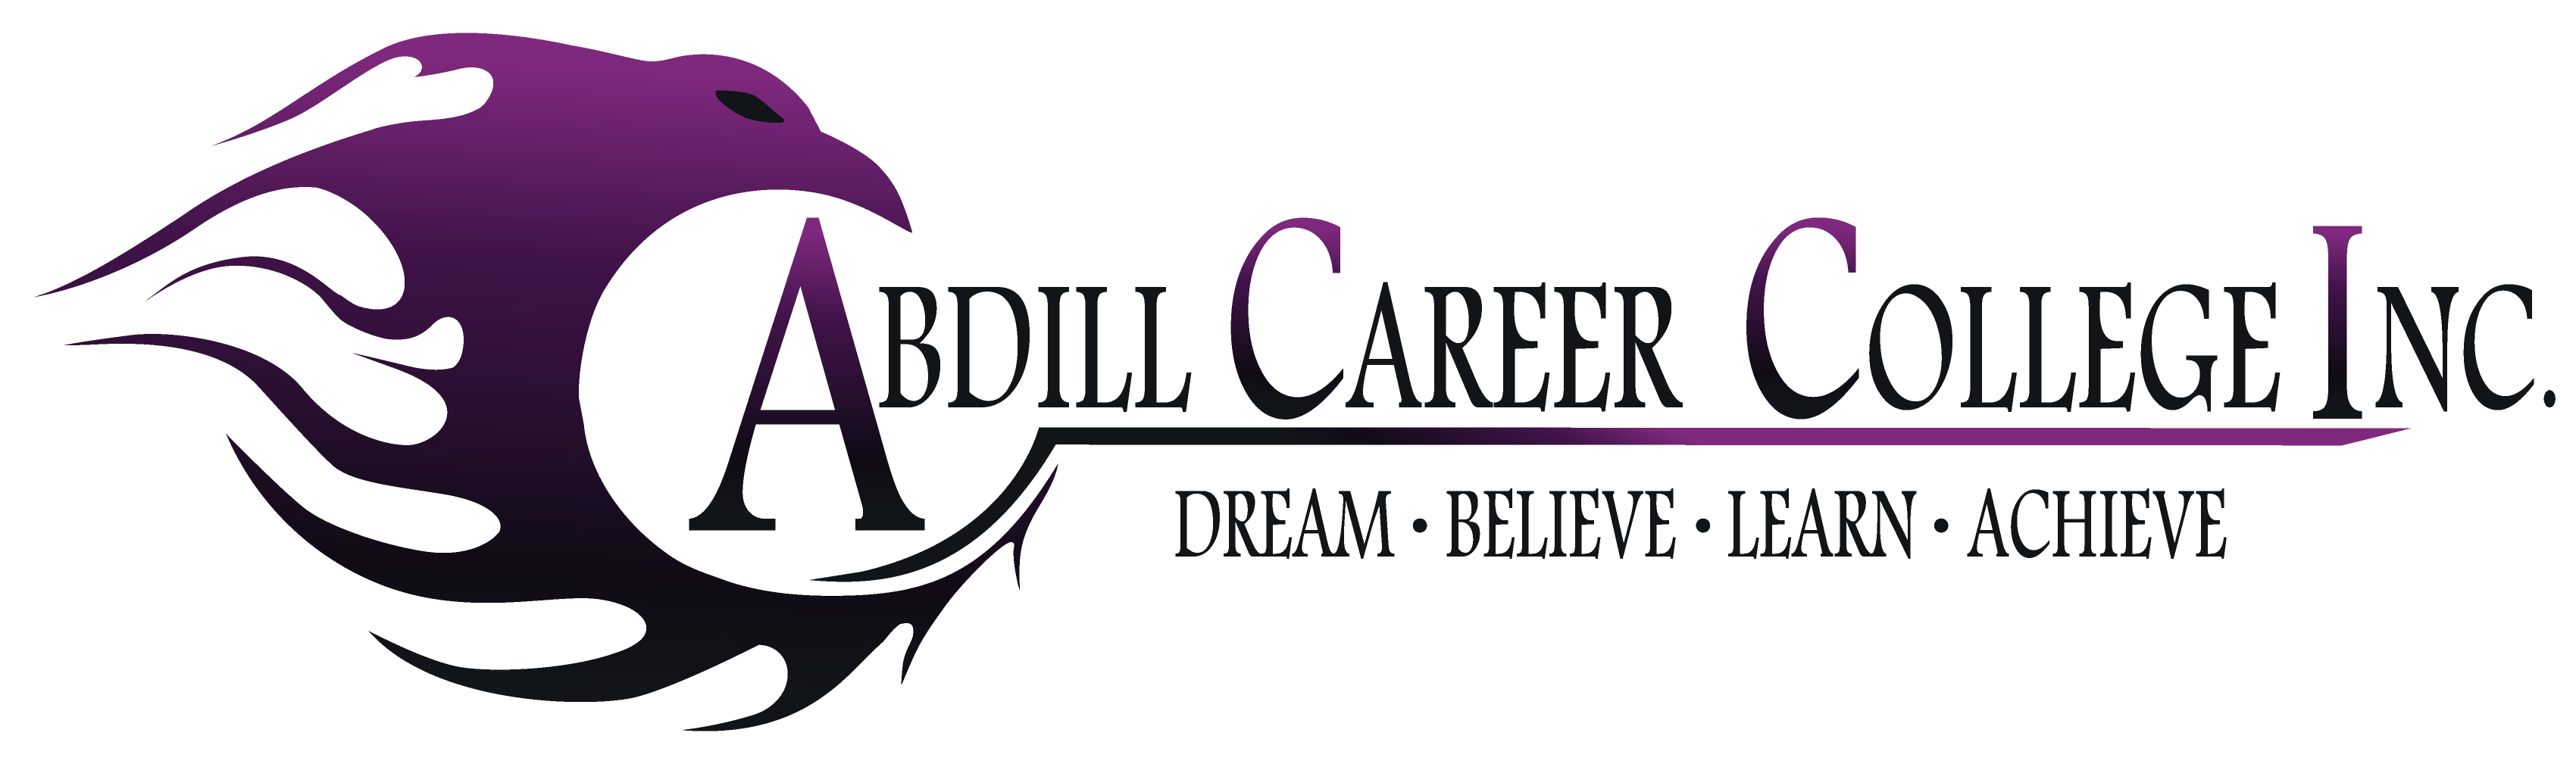 Pharmacy Technician Logo - Pharmacy Technician | Abdill Career College Inc